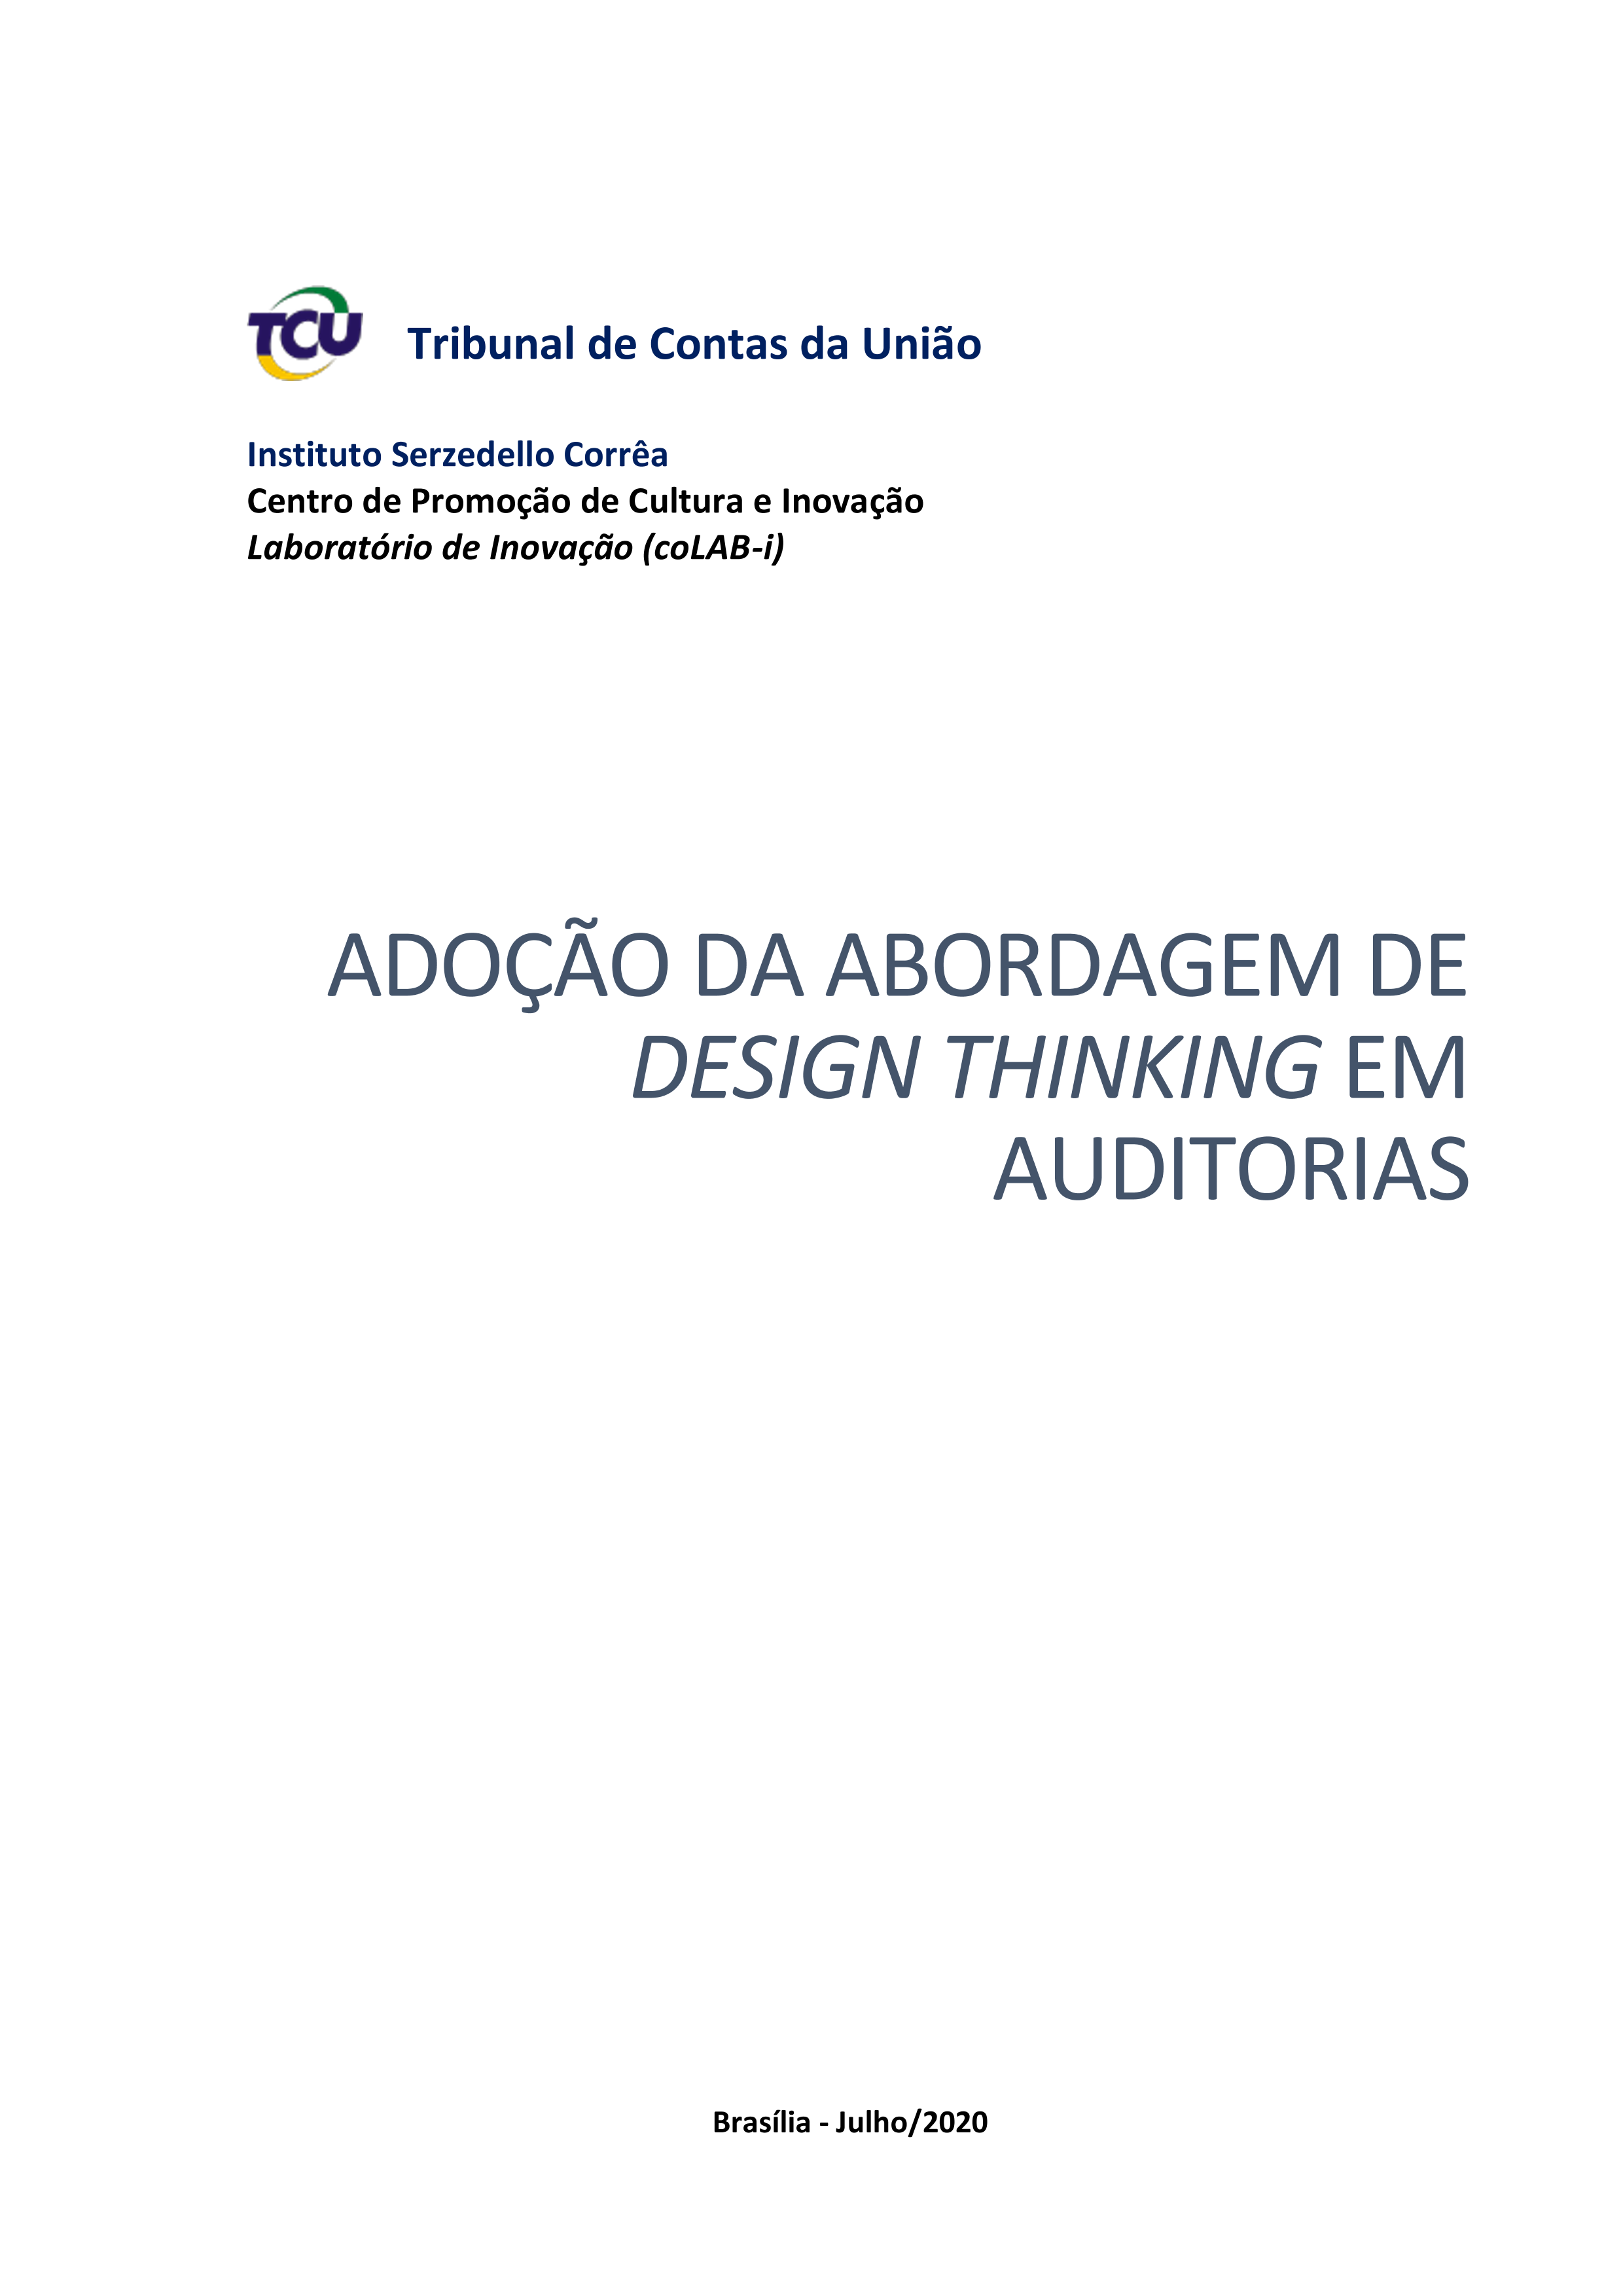 adocao da abordagem do design thinking em auditorias _1_.png